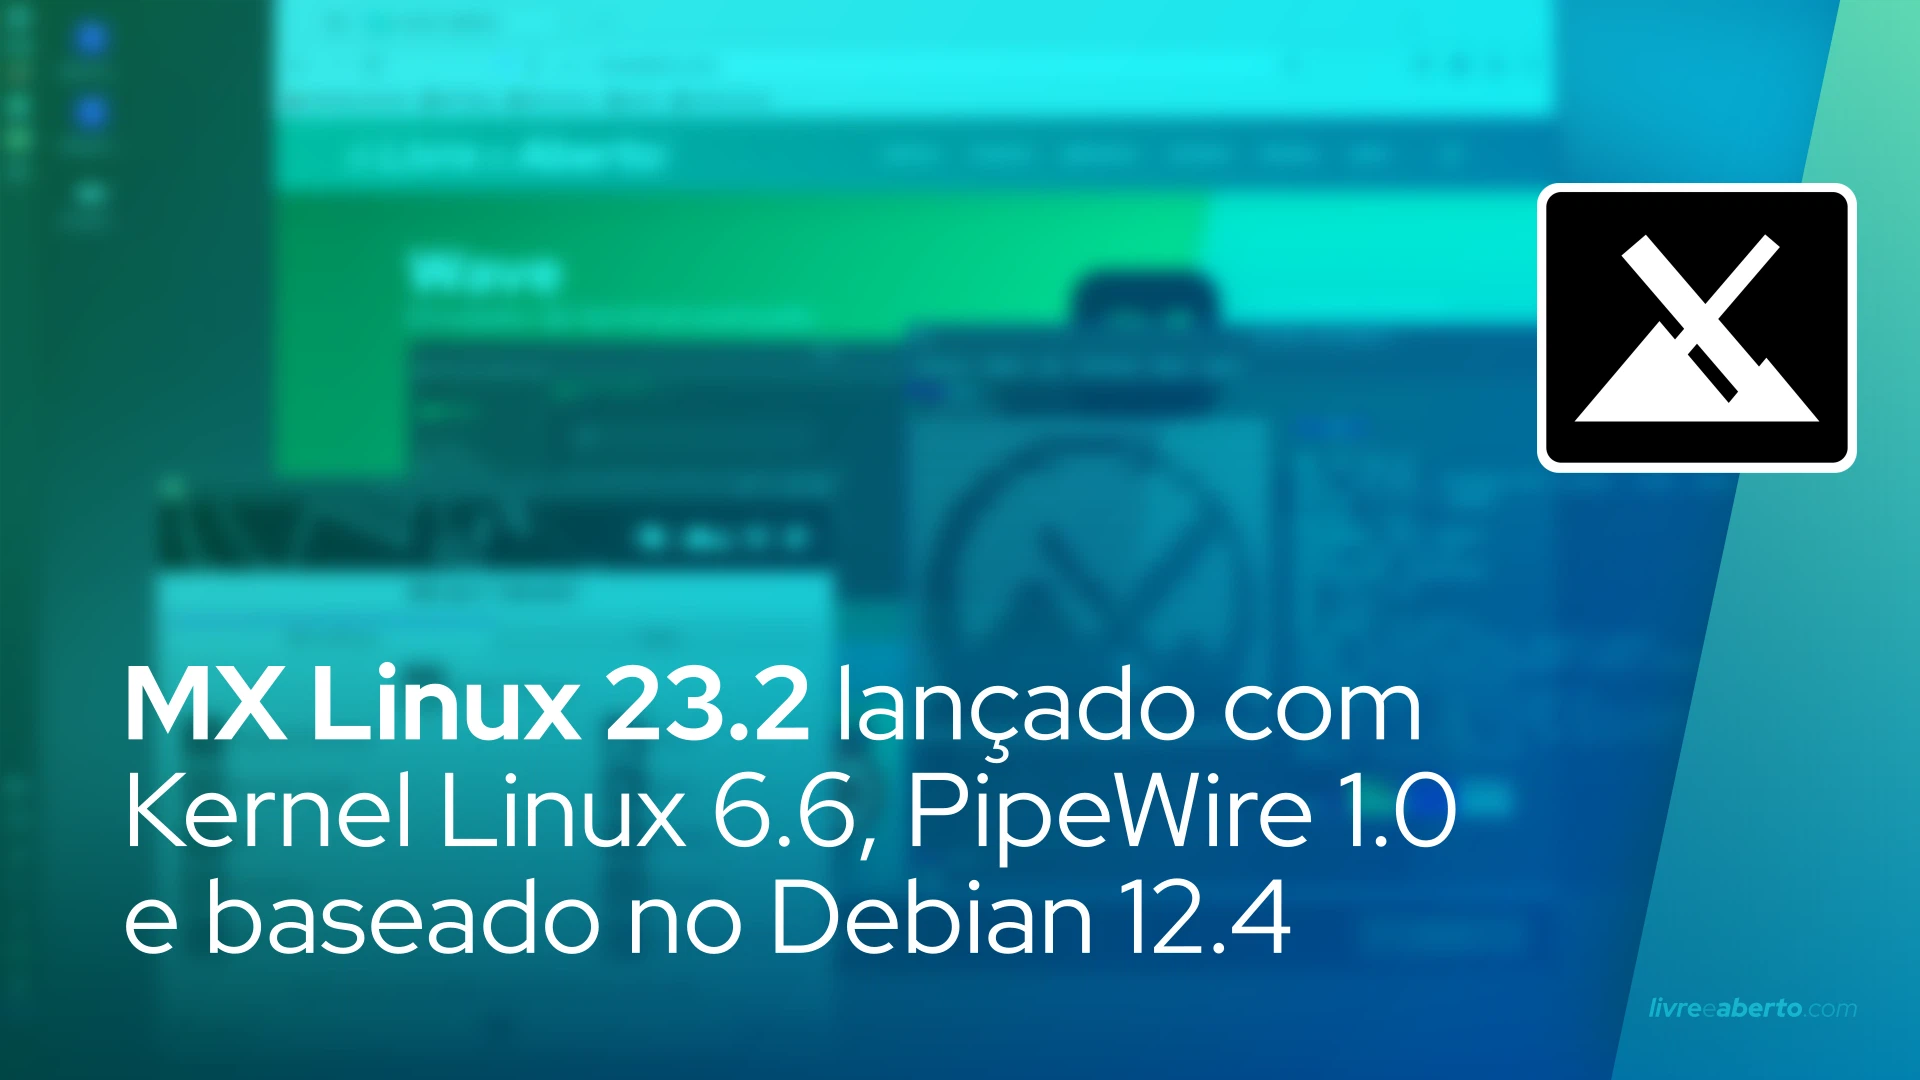 MX Linux 23.2 lançado com Kernel Linux 6.6, PipeWire 1.0 e baseado no Debian 12.4